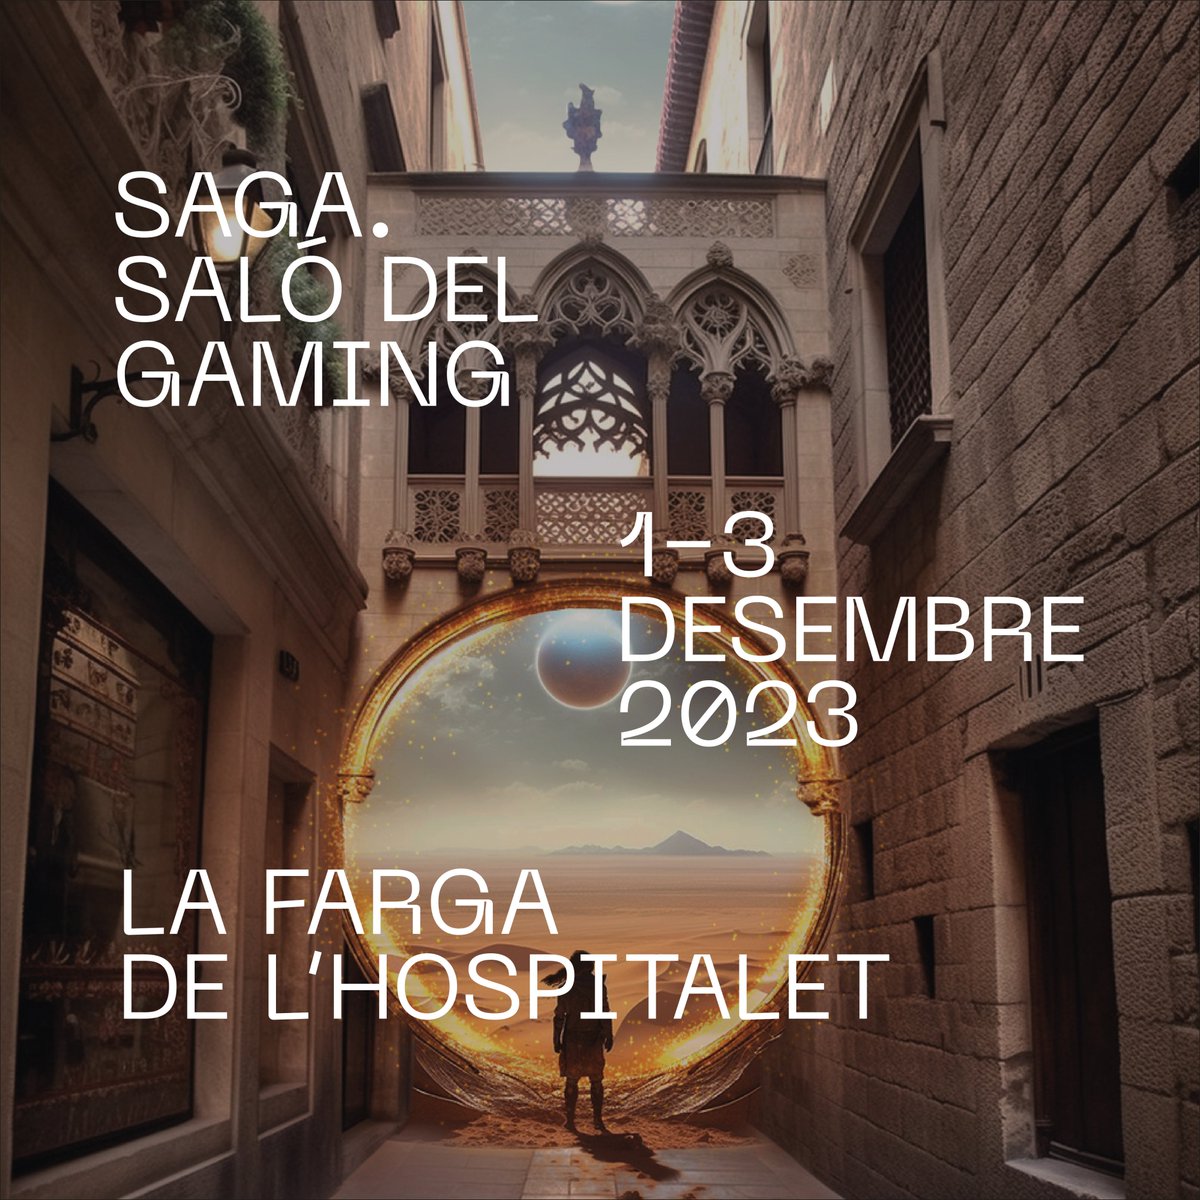 🕹️ El @SagaSaloGaming, organitzat per @llenguacat i amb el suport del @govern, duplicarà l'espai d'exposició amb 7.000 m² 🏆Els Premis d'engany incorporen un nou guardó, impulsat per la Secretaria de Polítiques Digitals, al videojoc amb ➕ impacte social ➕Inclusió ➕Diversitat